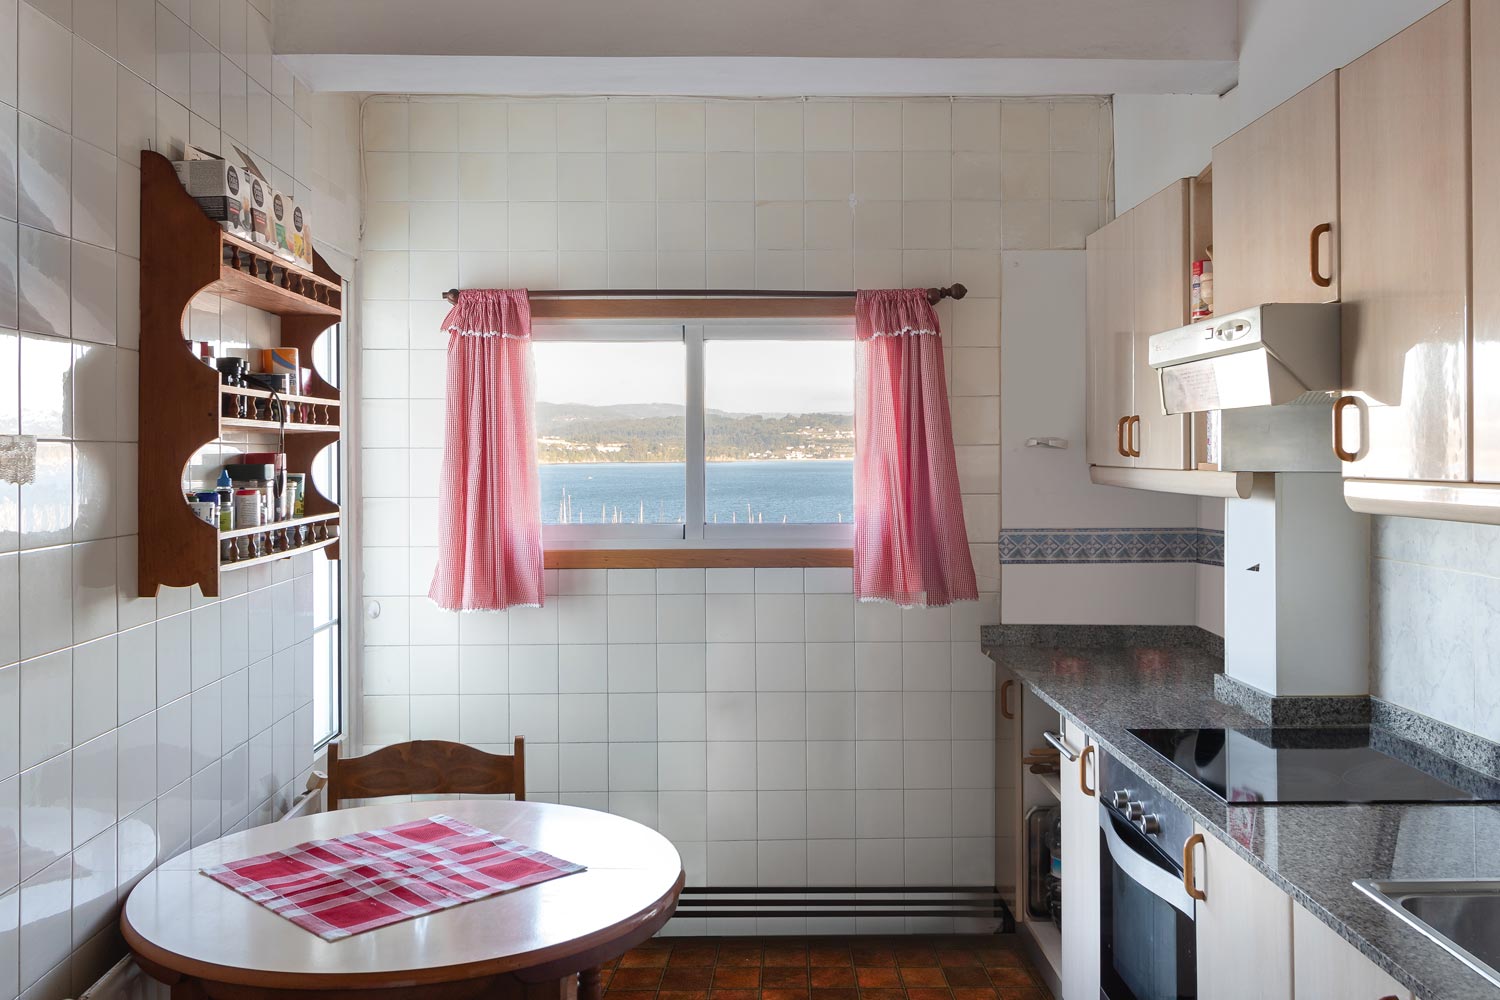 Cocina antigua en planta superior de vivienda unifamiliar en Sada y sus contornos_ Cortintas rosadas y vistas al mar